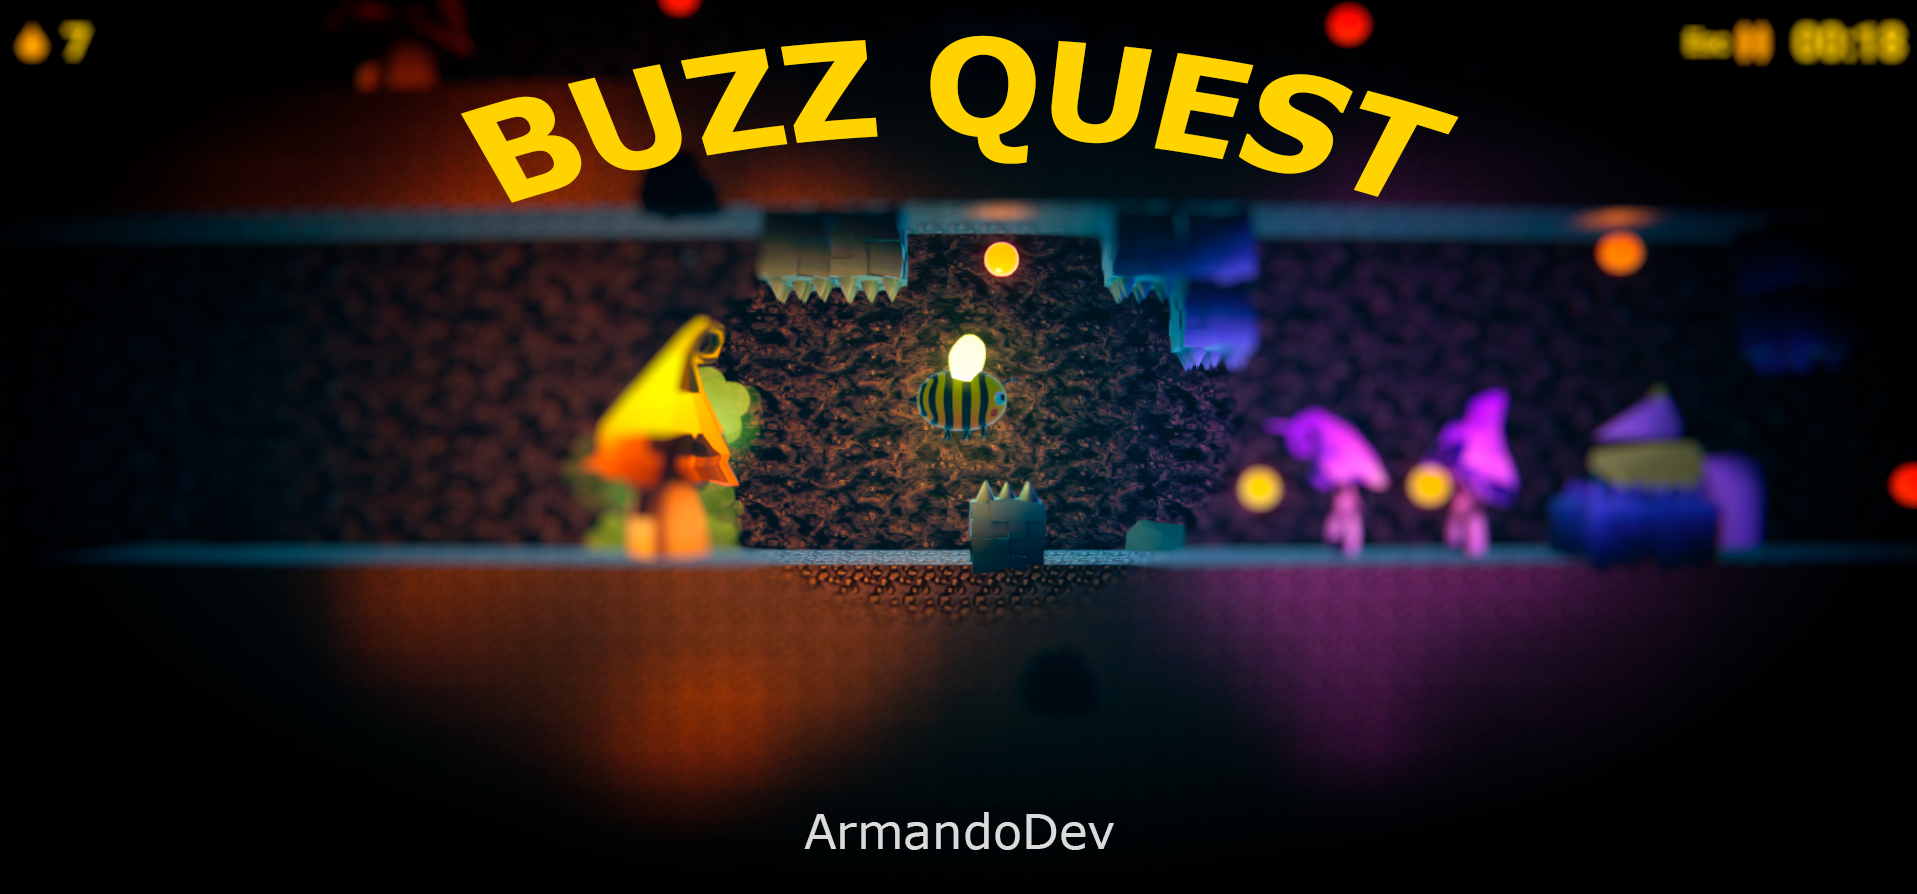 Buzz Quest